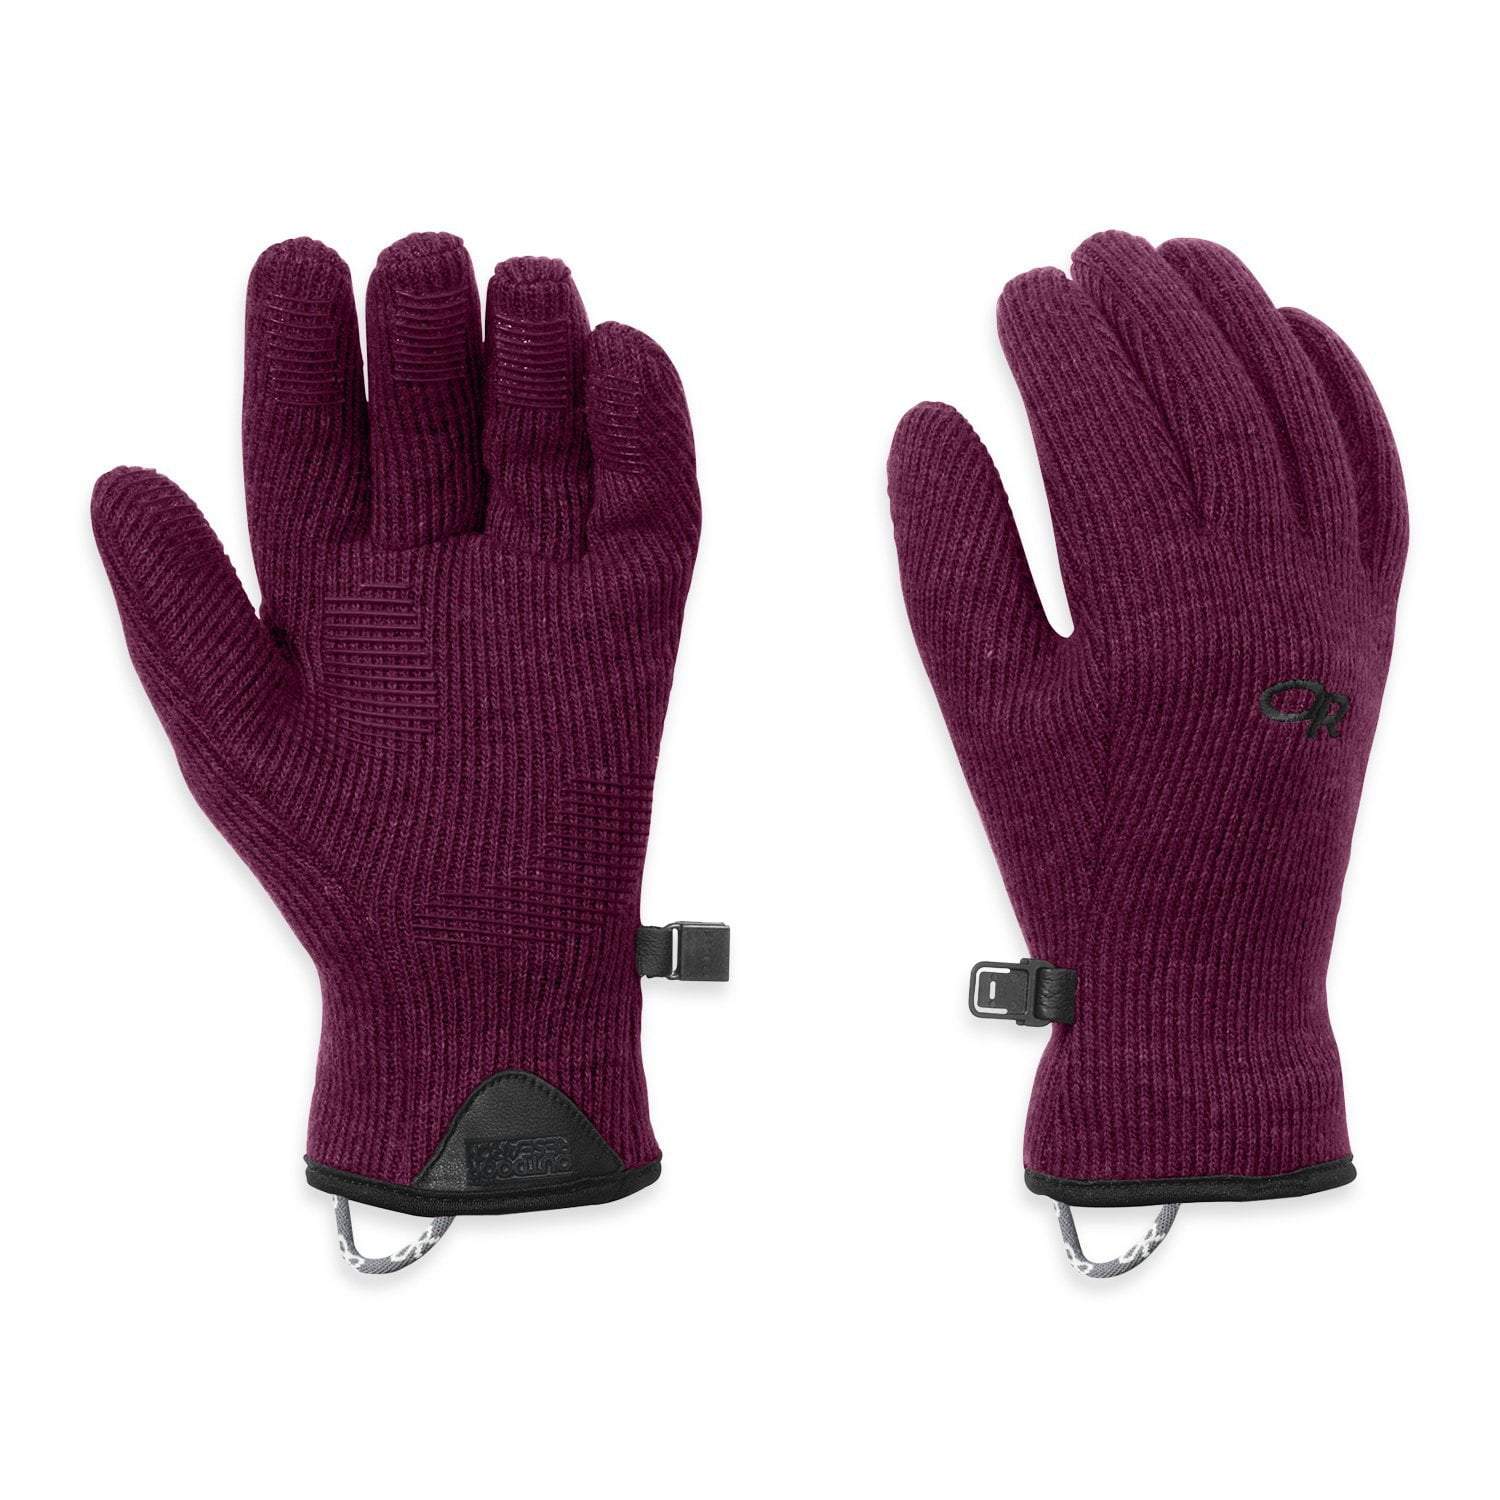 Outdoor Research Flurry Sensor Gloves - Women's